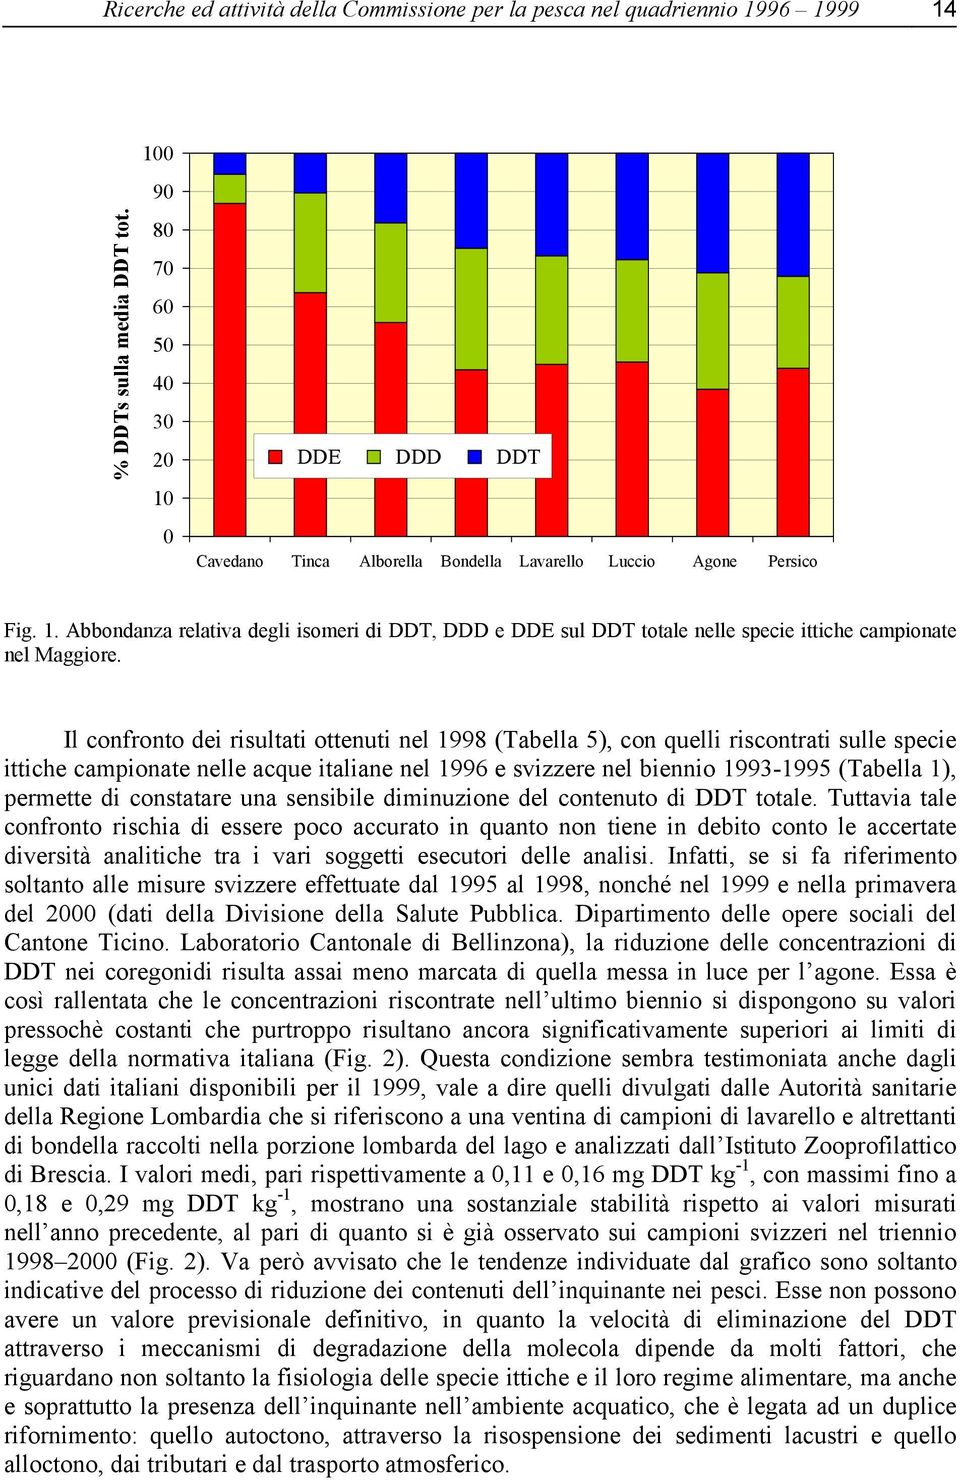 Il confronto dei risultati ottenuti nel 1998 (Tabella 5), con quelli riscontrati sulle specie ittiche campionate nelle acque italiane nel 1996 e svizzere nel biennio 1993-1995 (Tabella 1), permette